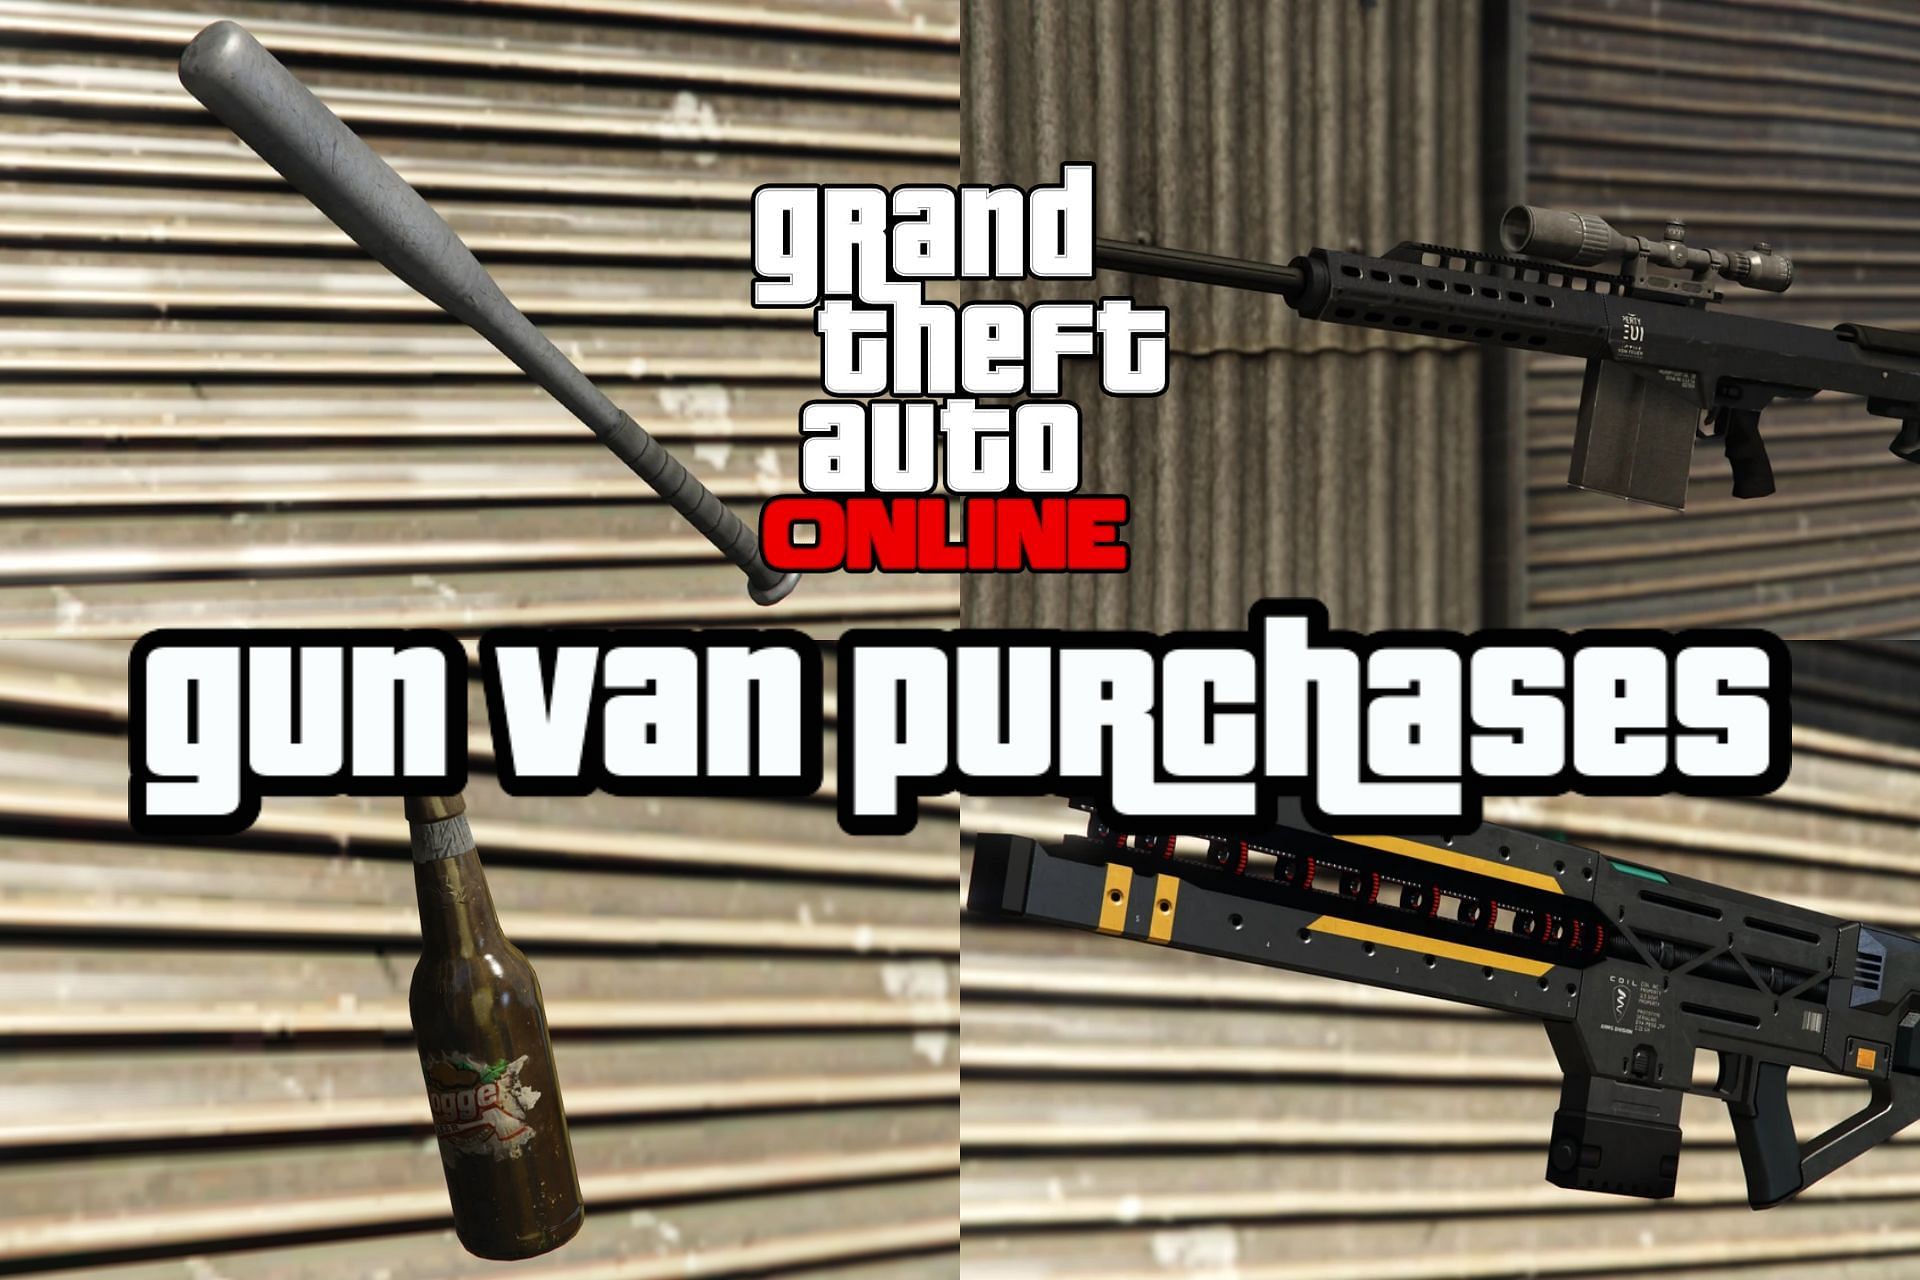 Gun Van location today - find the Gun Van and get the new Railgun